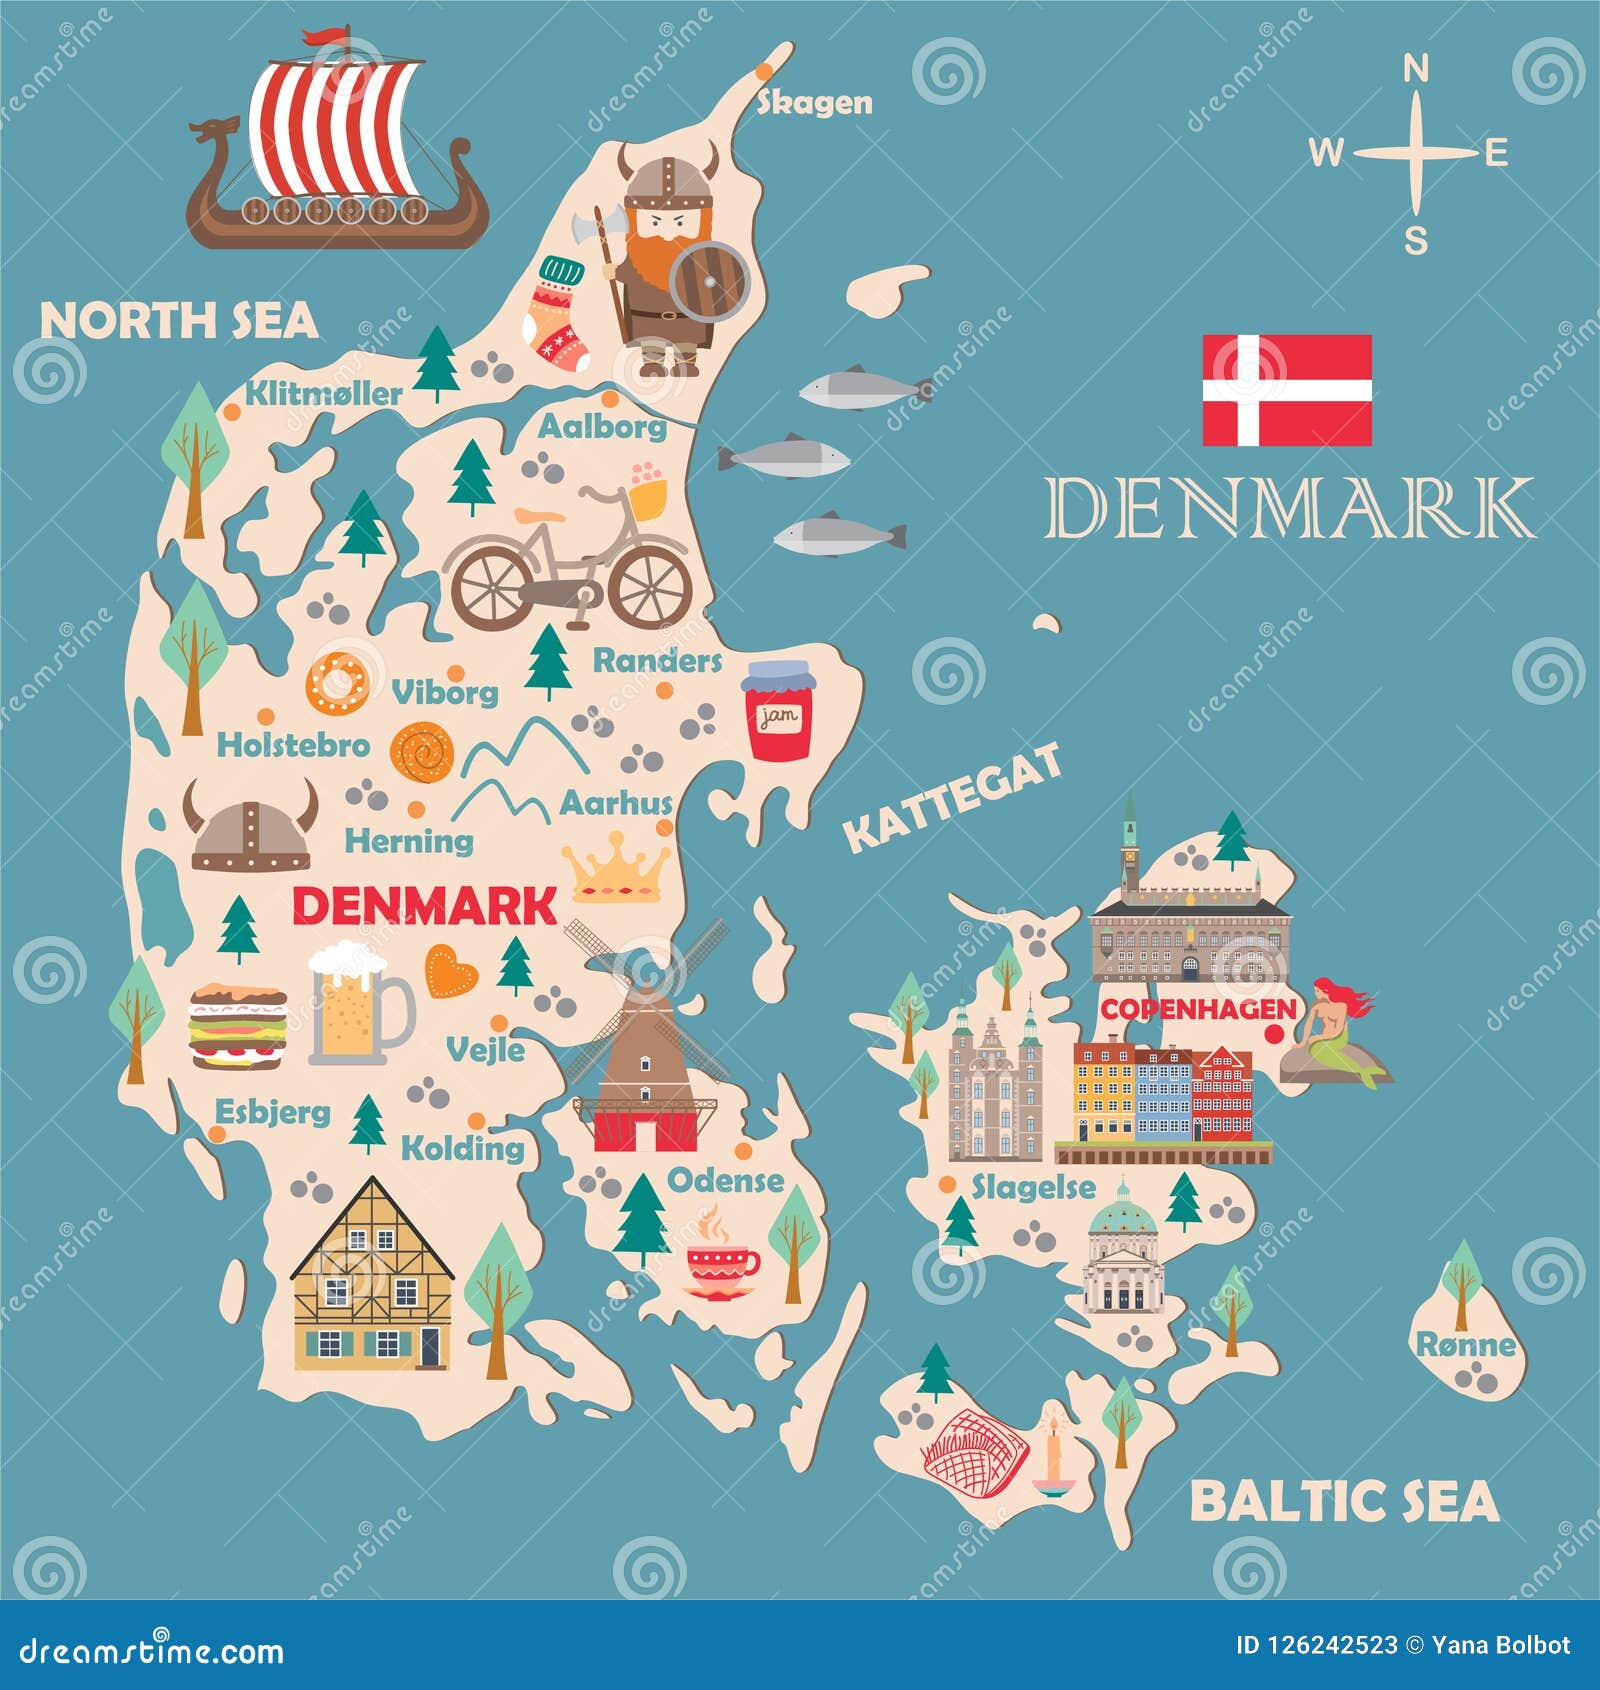 丹麦地图英文版_丹麦地图查询